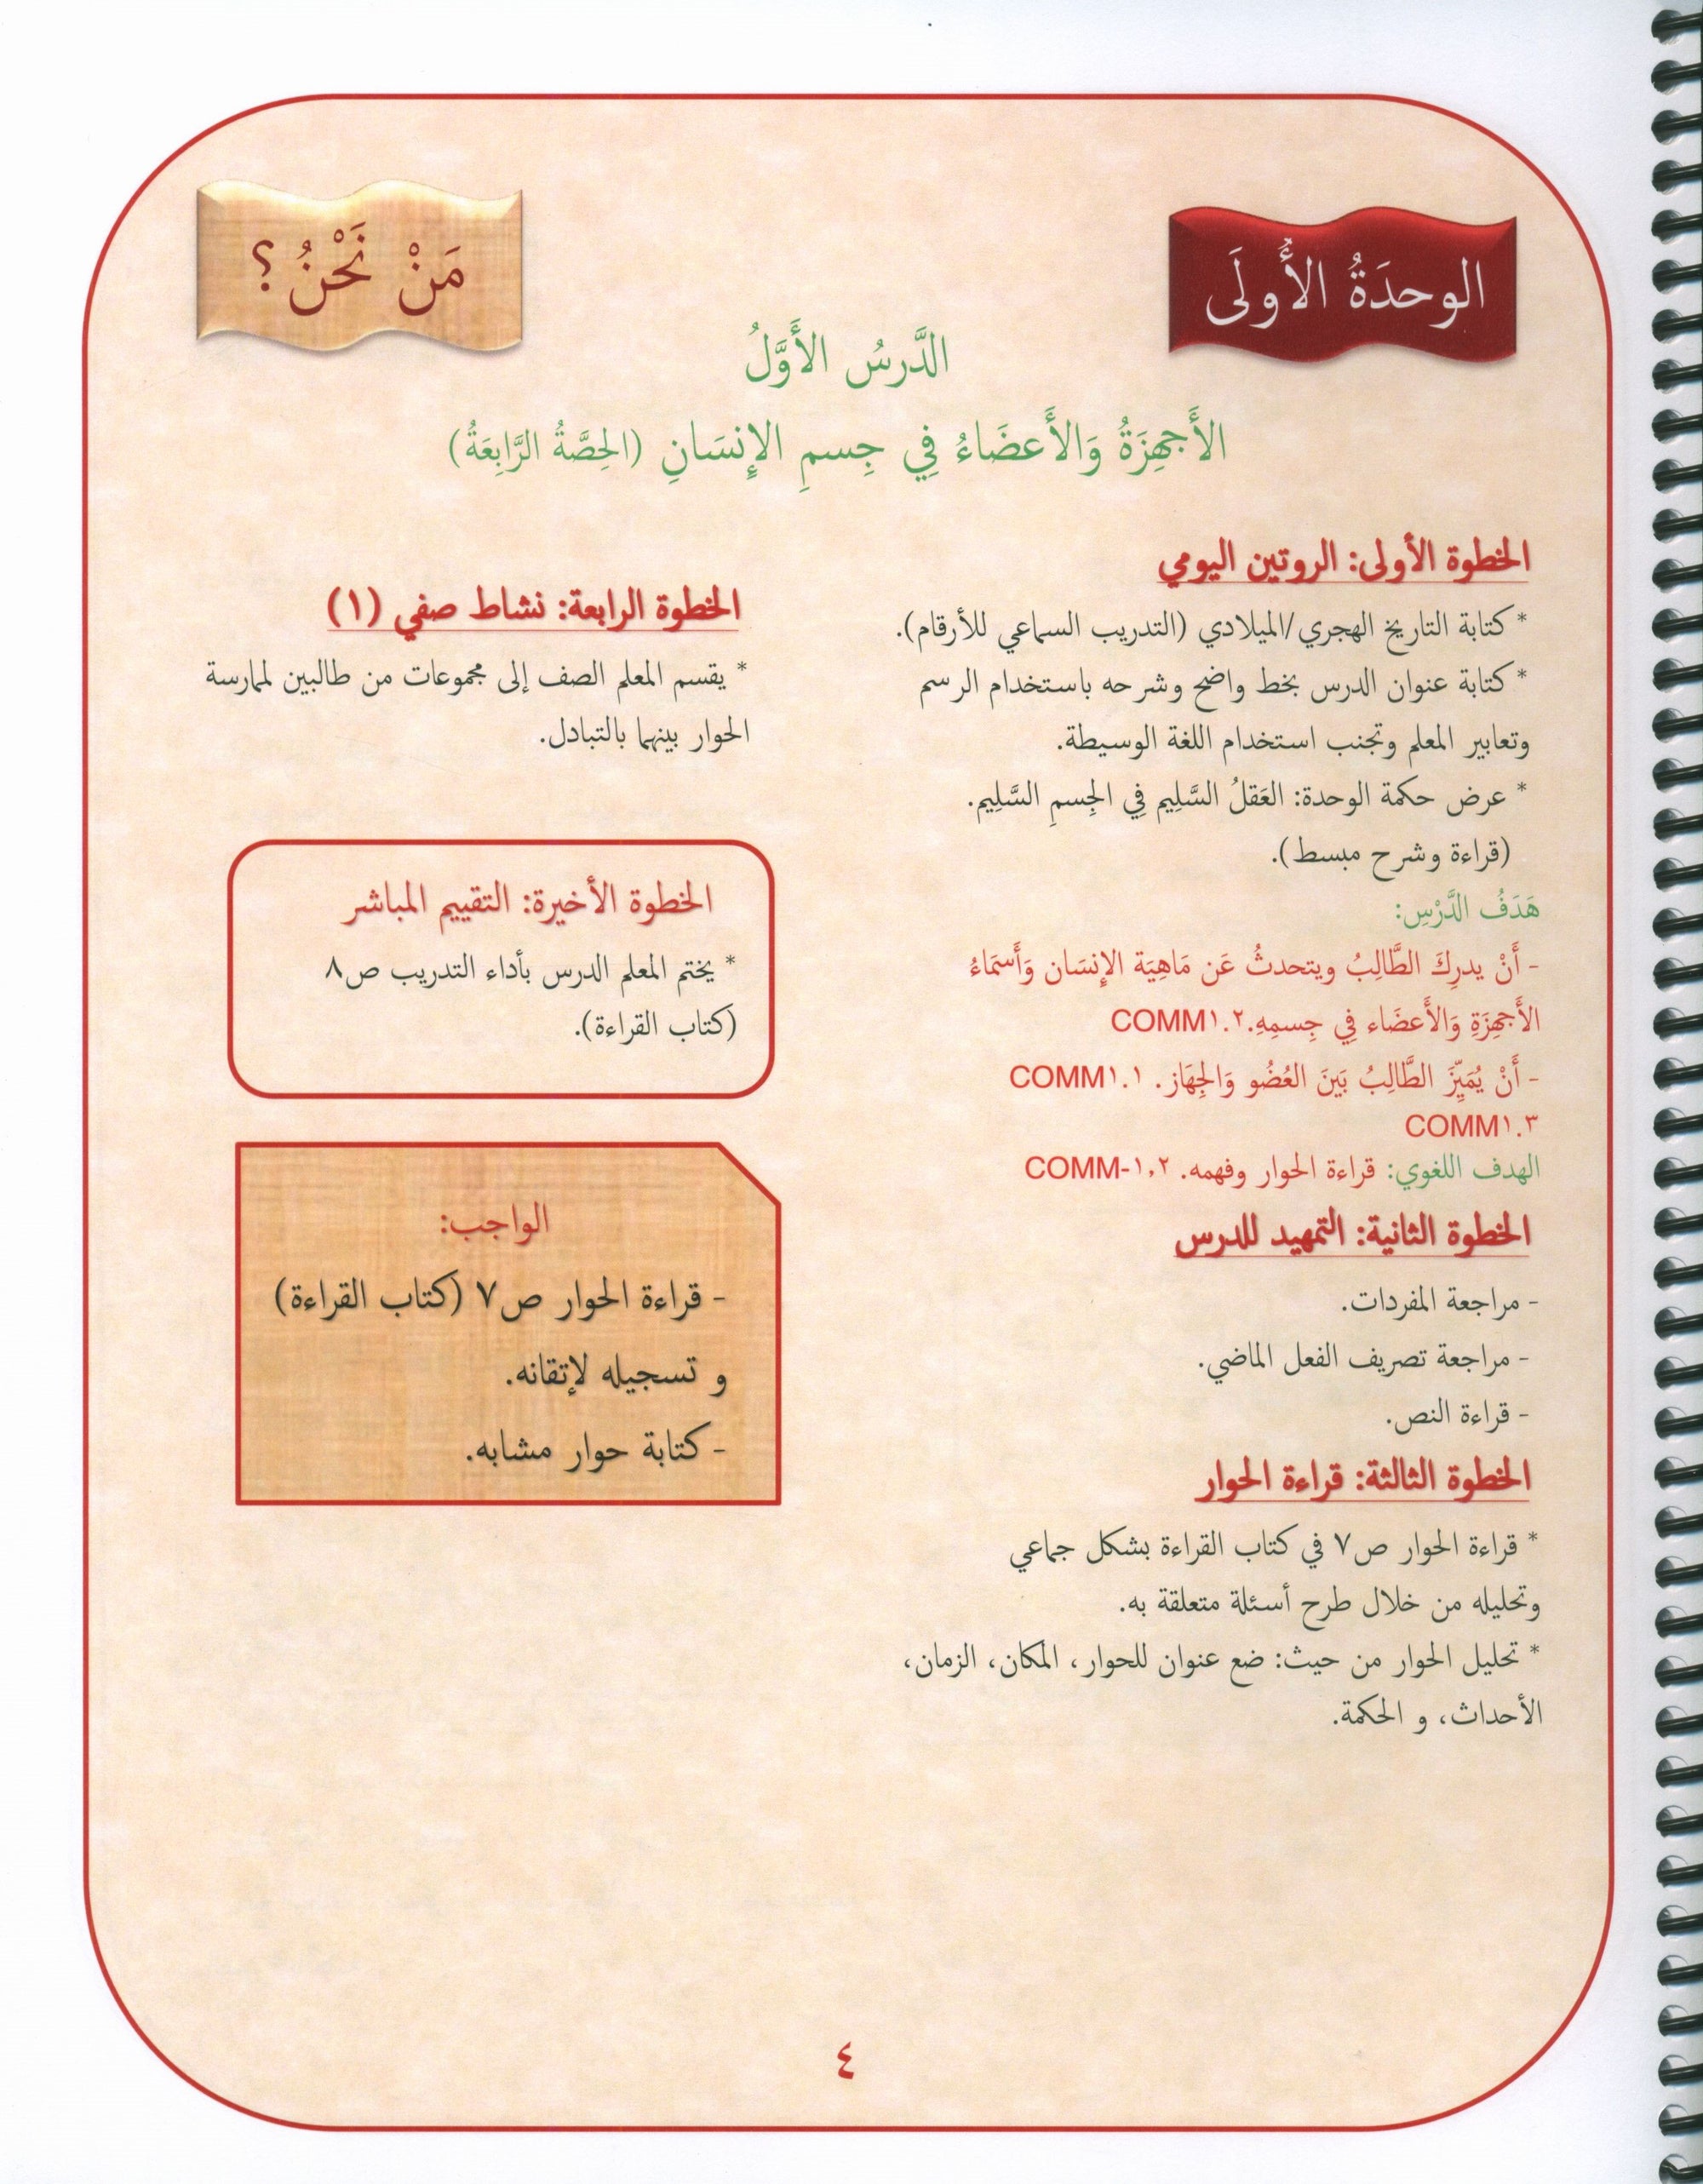 Gems of Arabic Teacher's Guide Level 5